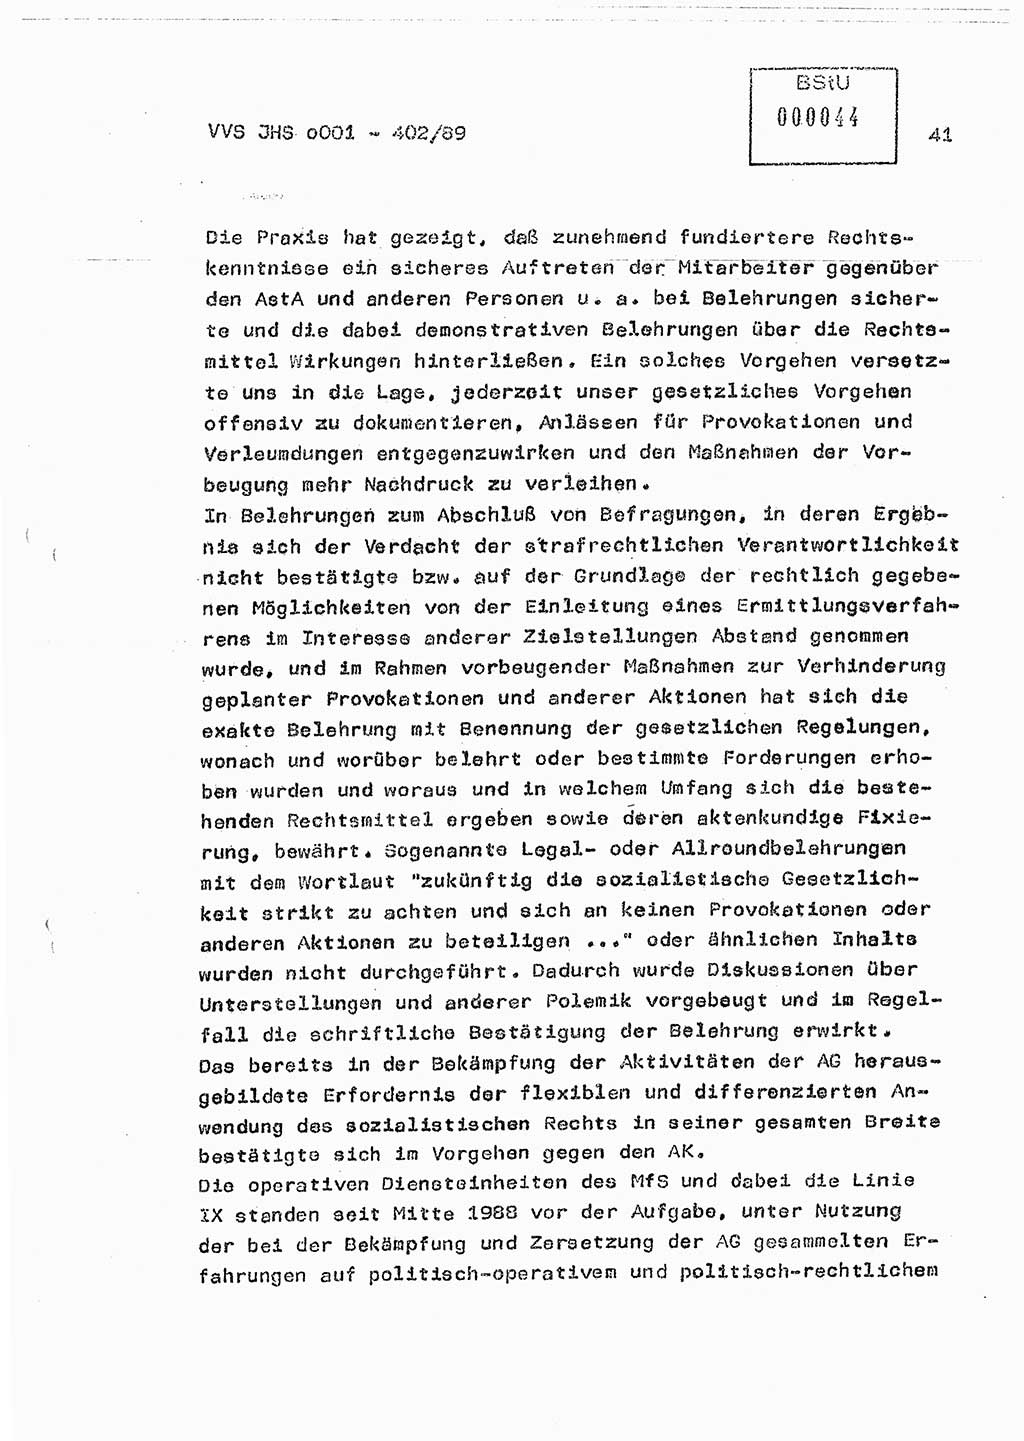 Diplomarbeit Major Günter Müller (HA Ⅸ/9), Ministerium für Staatssicherheit (MfS) [Deutsche Demokratische Republik (DDR)], Juristische Hochschule (JHS), Vertrauliche Verschlußsache (VVS) o001-402/89, Potsdam 1989, Seite 41 (Dipl.-Arb. MfS DDR JHS VVS o001-402/89 1989, S. 41)